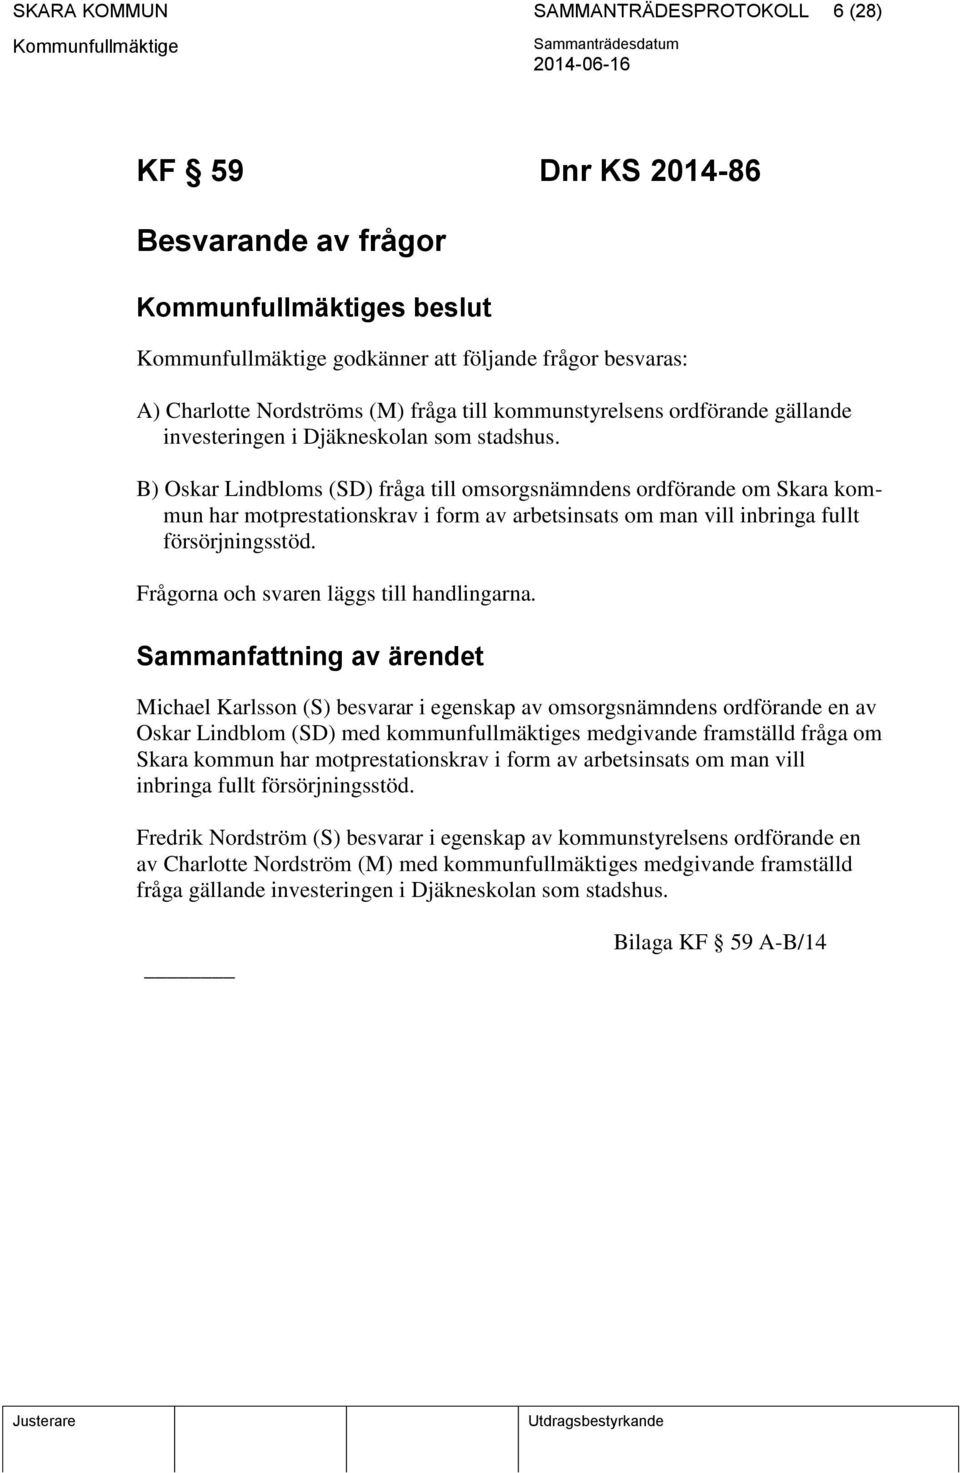 B) Oskar Lindbloms (SD) fråga till omsorgsnämndens ordförande om Skara kommun har motprestationskrav i form av arbetsinsats om man vill inbringa fullt försörjningsstöd.